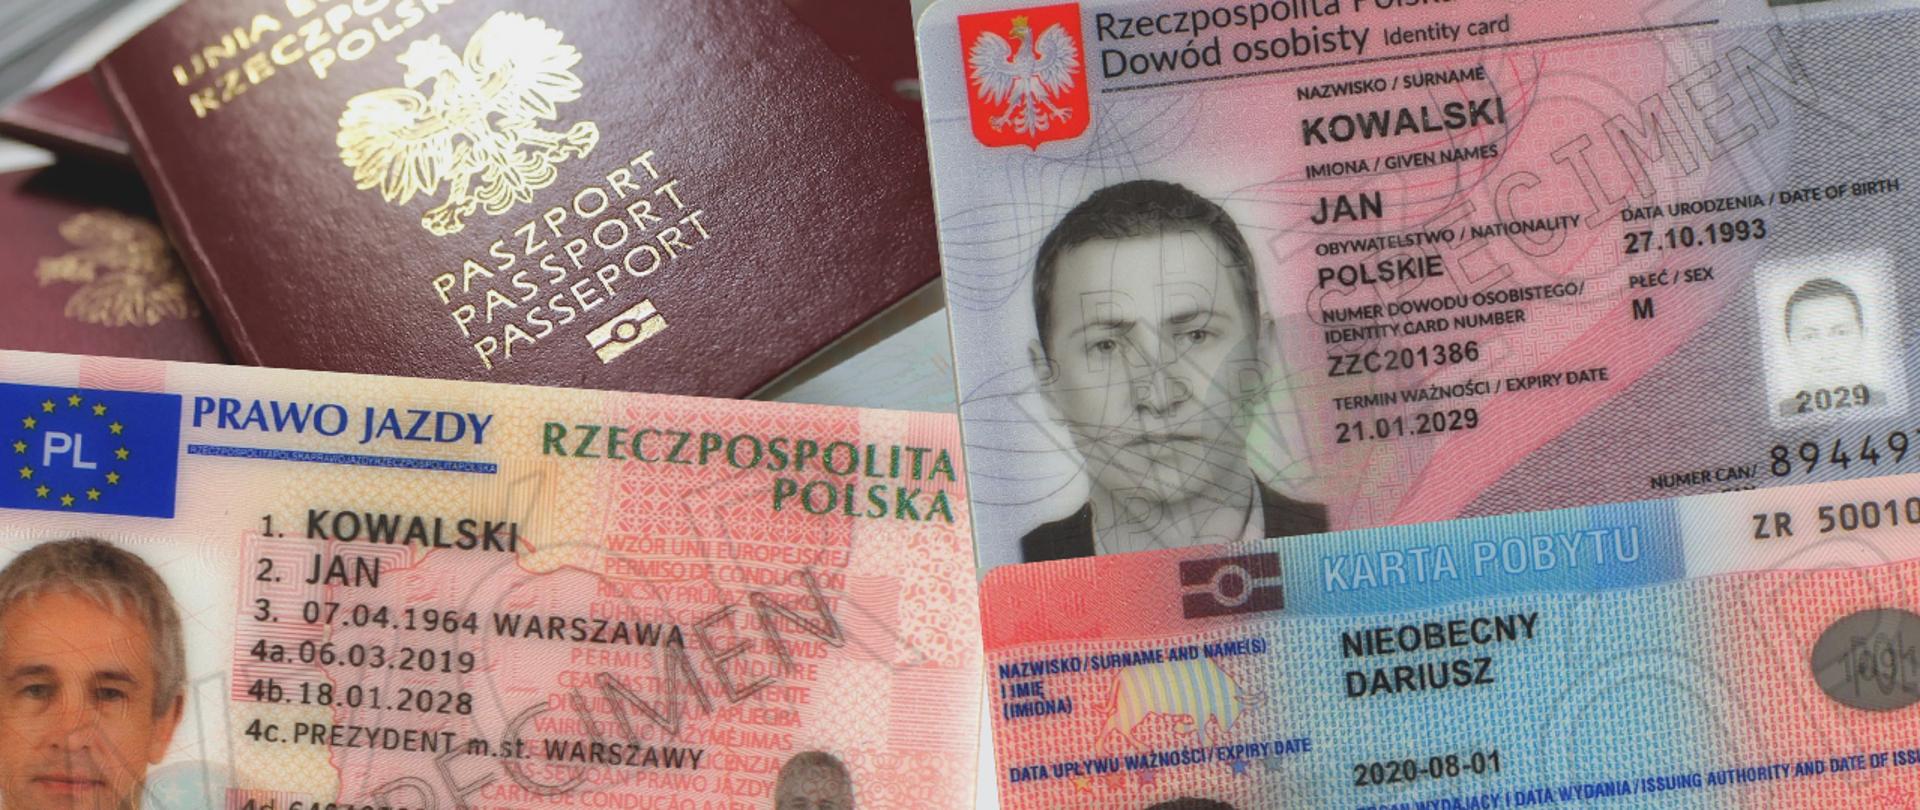 Grafika przedstawia dokumenty takie jak paszport Rzeczypospolitej Polskiej oraz prawo jazdy, dowód osobisty, a także kartę pobytu.